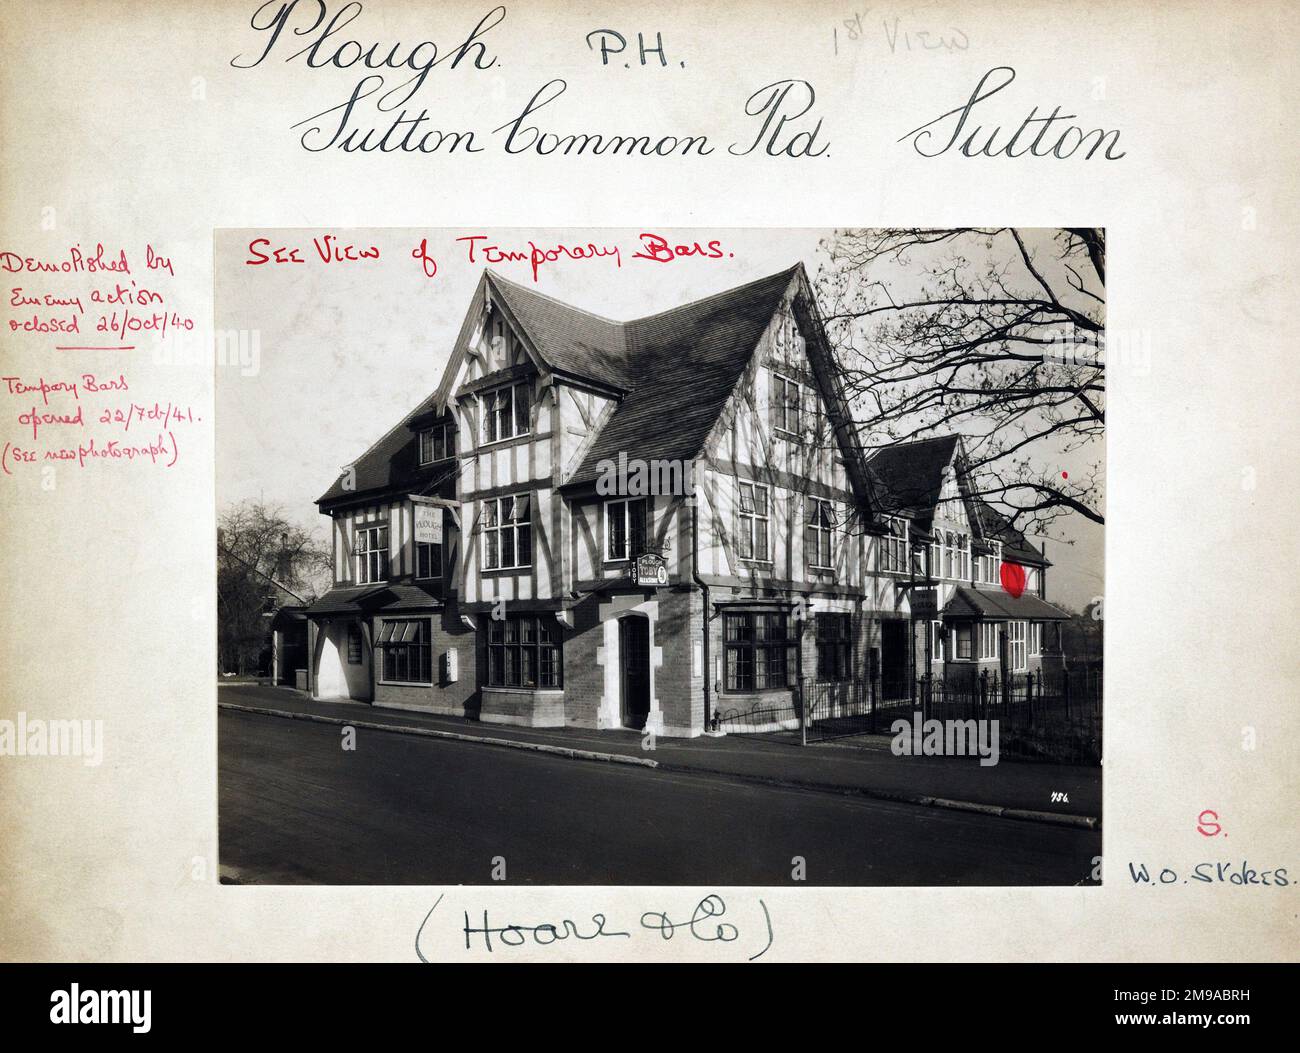 Foto von Plough PH, Sutton (Alt), Surrey. Die Hauptseite des Aufdrucks (hier abgebildet) zeigt: Ecke auf der Ansicht des Pubs. Auf der Rückseite des Aufdrucks (auf Anfrage erhältlich) ist Folgendes angegeben: Trading Record 1938 . 1961 für den Plough, Sutton (Alt), Surrey SM3 9PW. Seit Juli 2018 . Zerstört durch feindliche Aktion am 26. Oktober 1940 Stockfoto